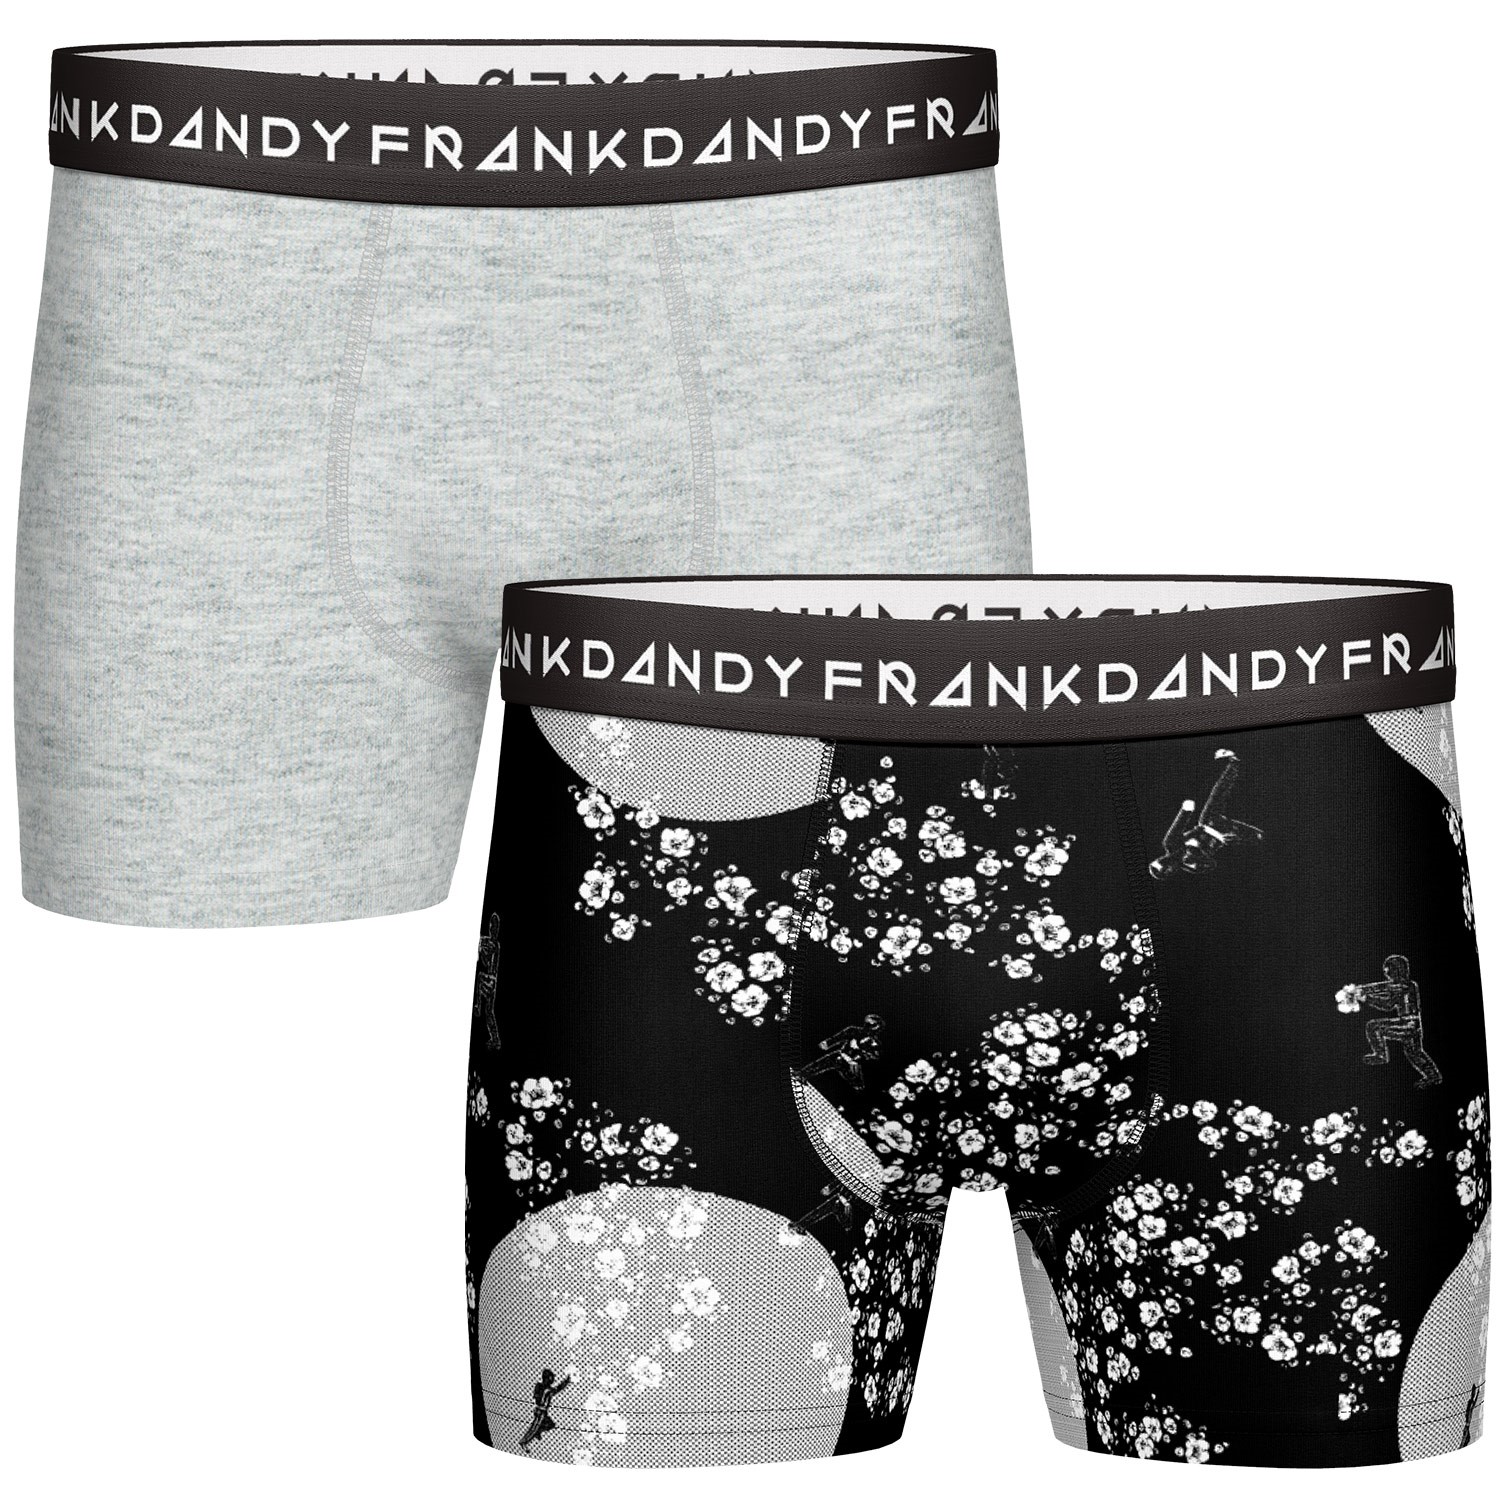 Frank Dandy Garden Ninja Boxer